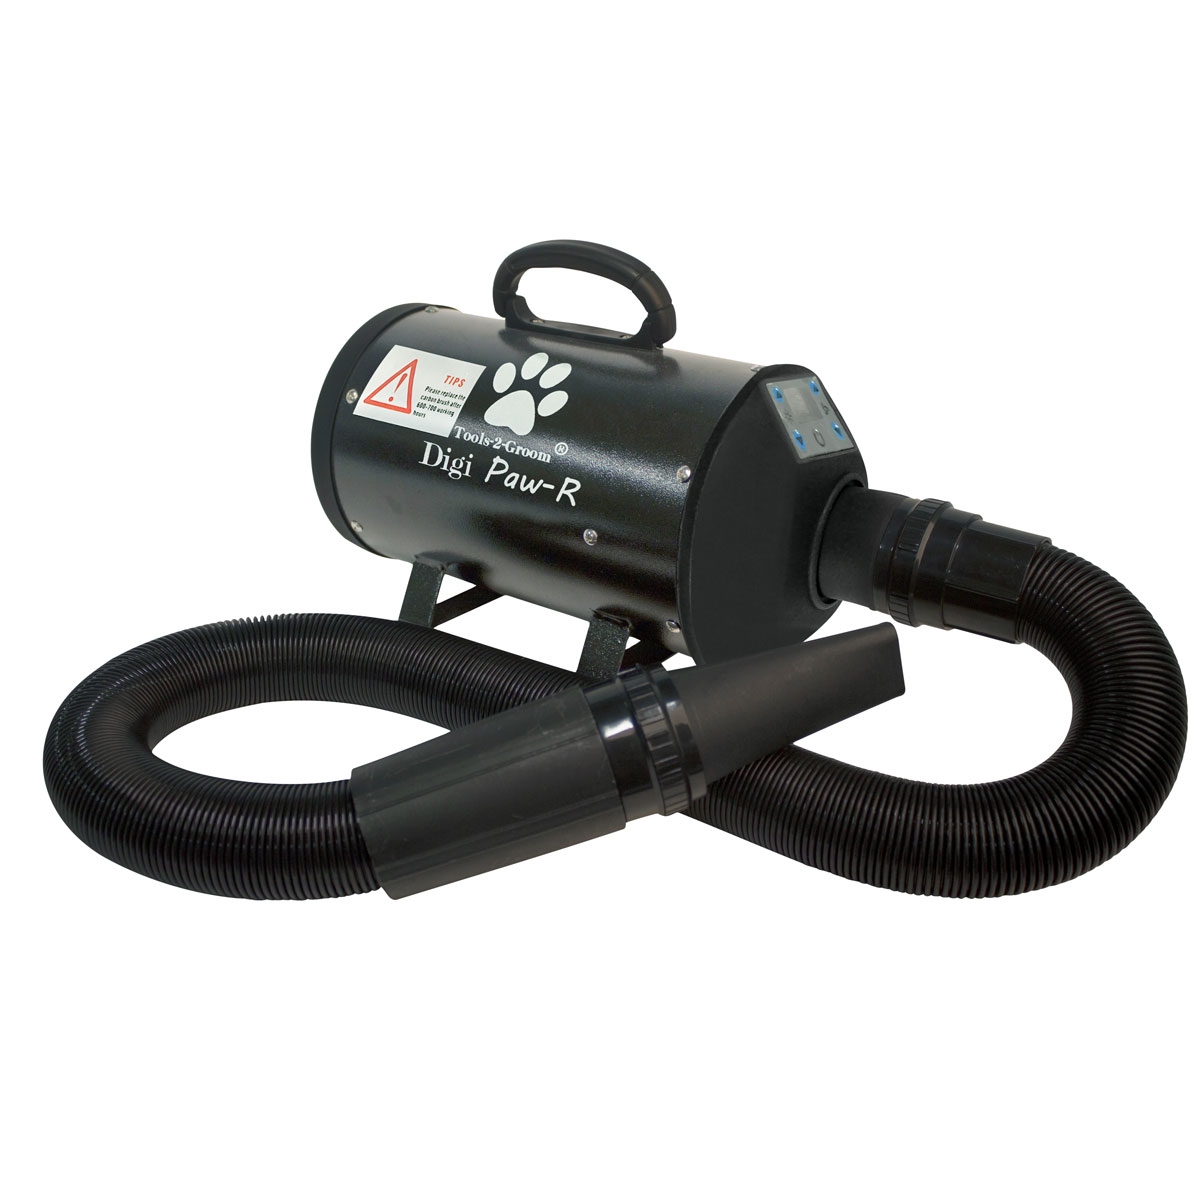 Tools-2-Groom Waterblazer Digi Paw-R 2200 Watt